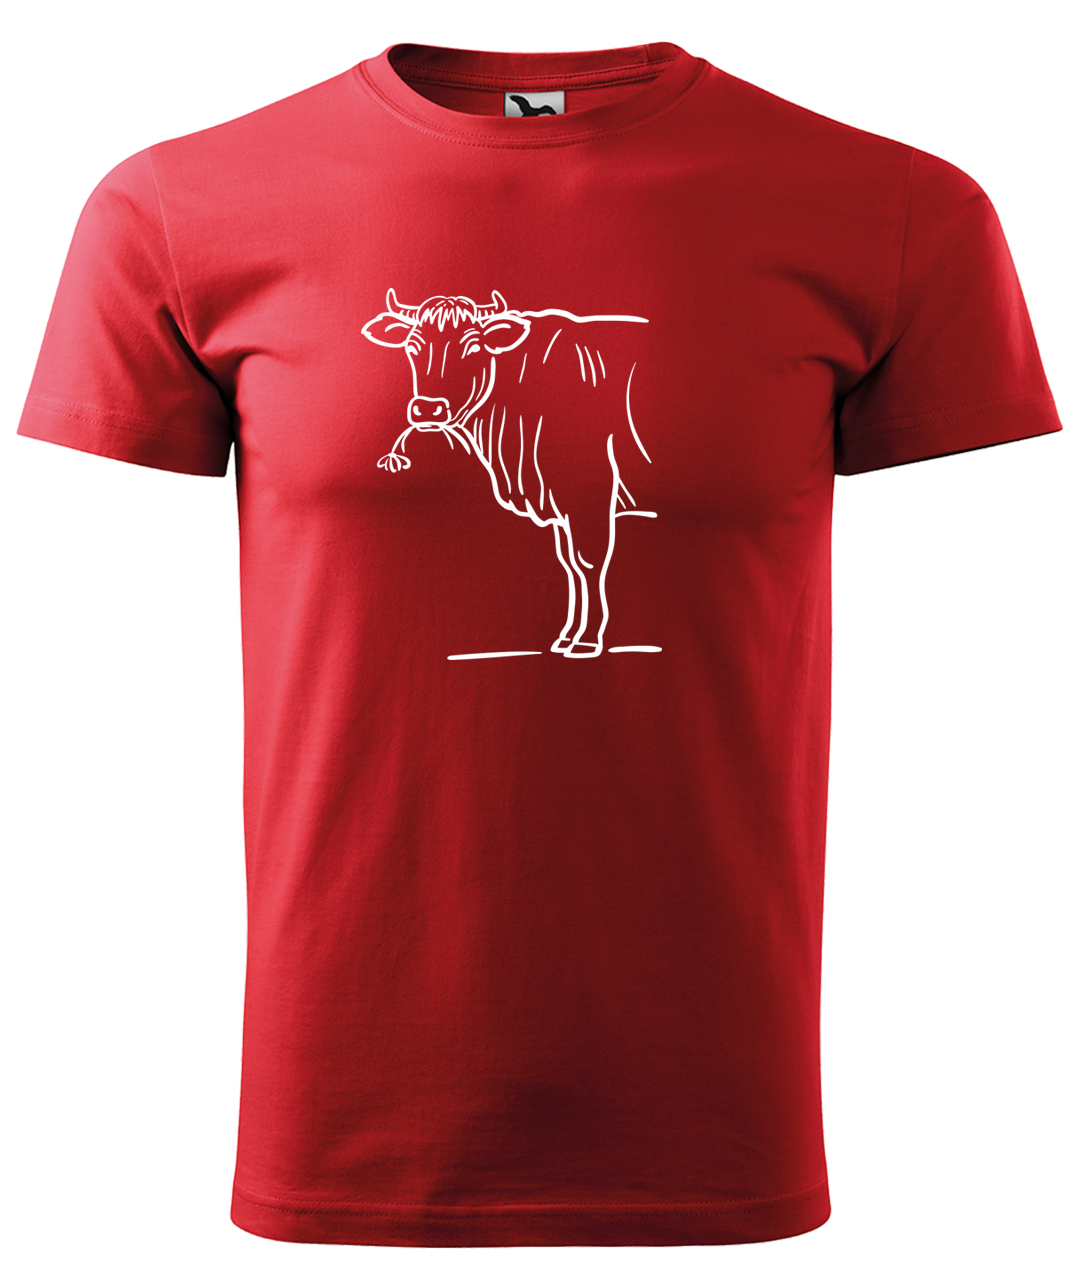 Dětské tričko s krávou - Býk Velikost: 8 let / 134 cm, Barva: Červená (07), Délka rukávu: Krátký rukáv